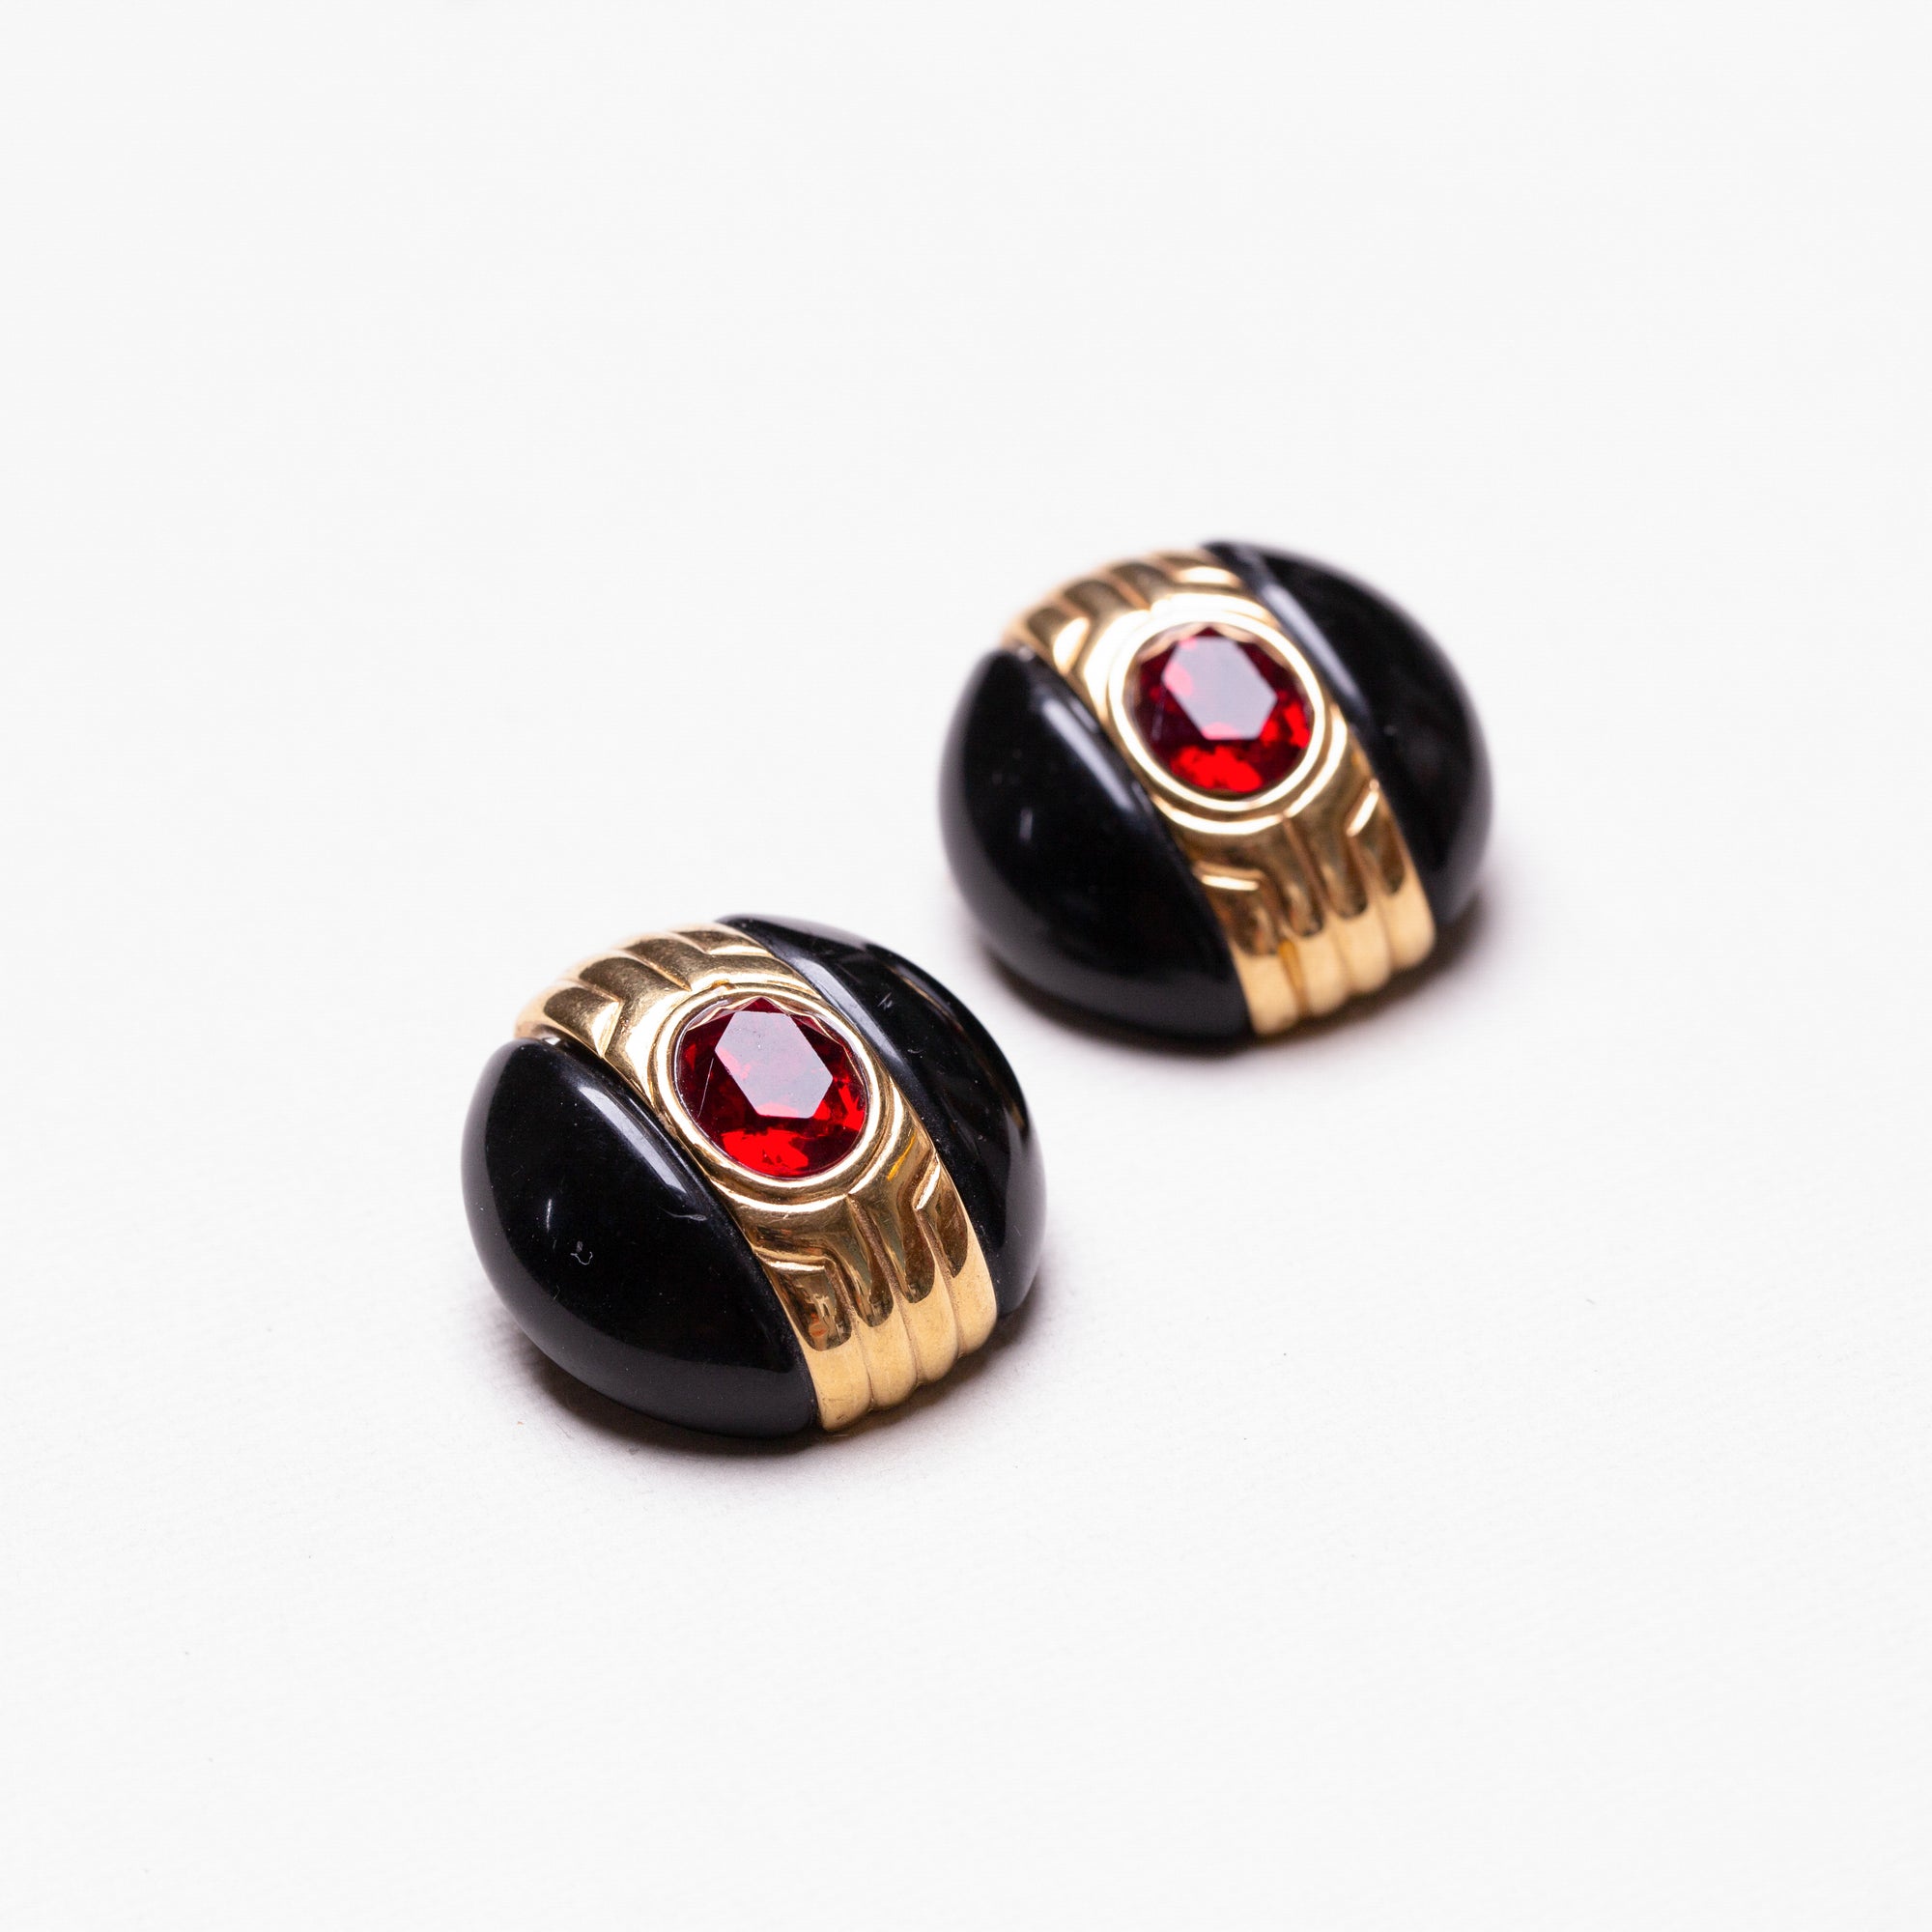 Vintage Black Enamel and Red Stone Earrings